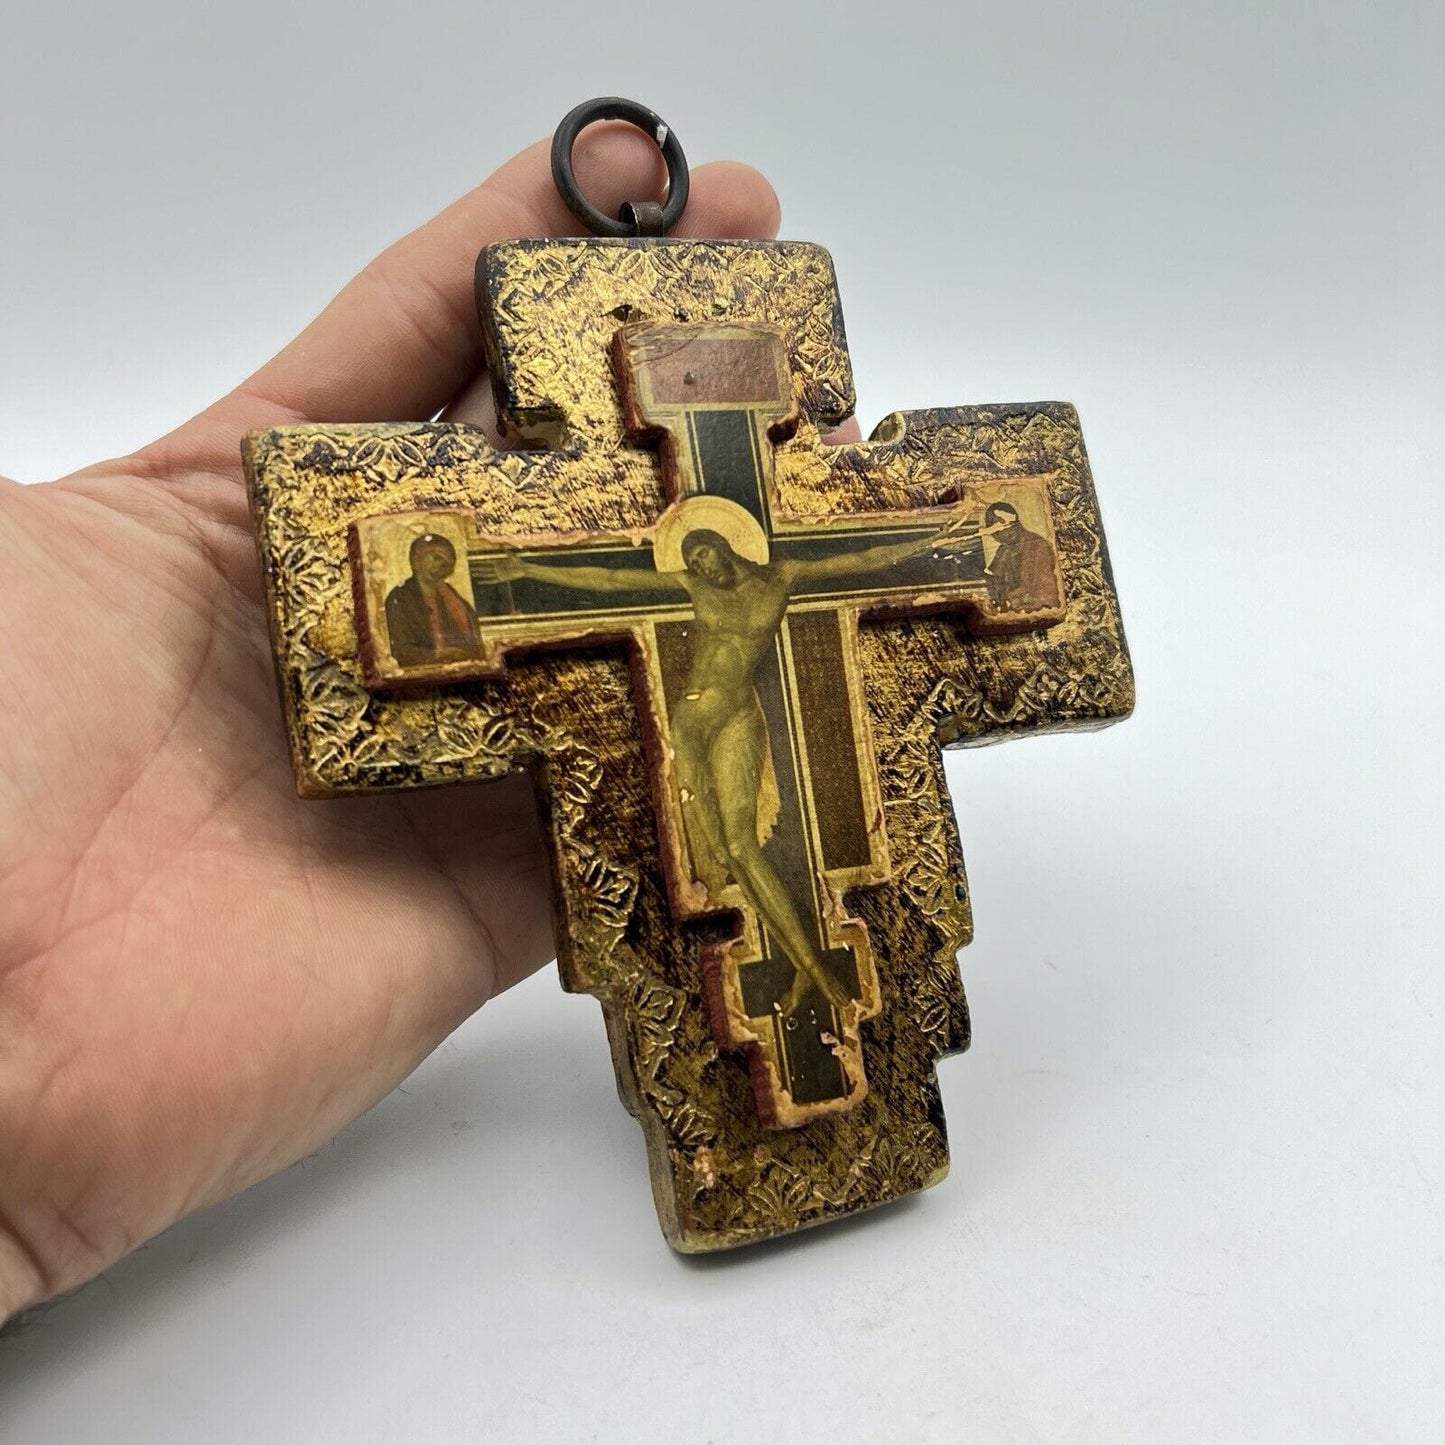 Crocifisso stile antico Icona Croce religiosa sacra in legno dorato da parete Categoria  Oggetti sacri - rosari